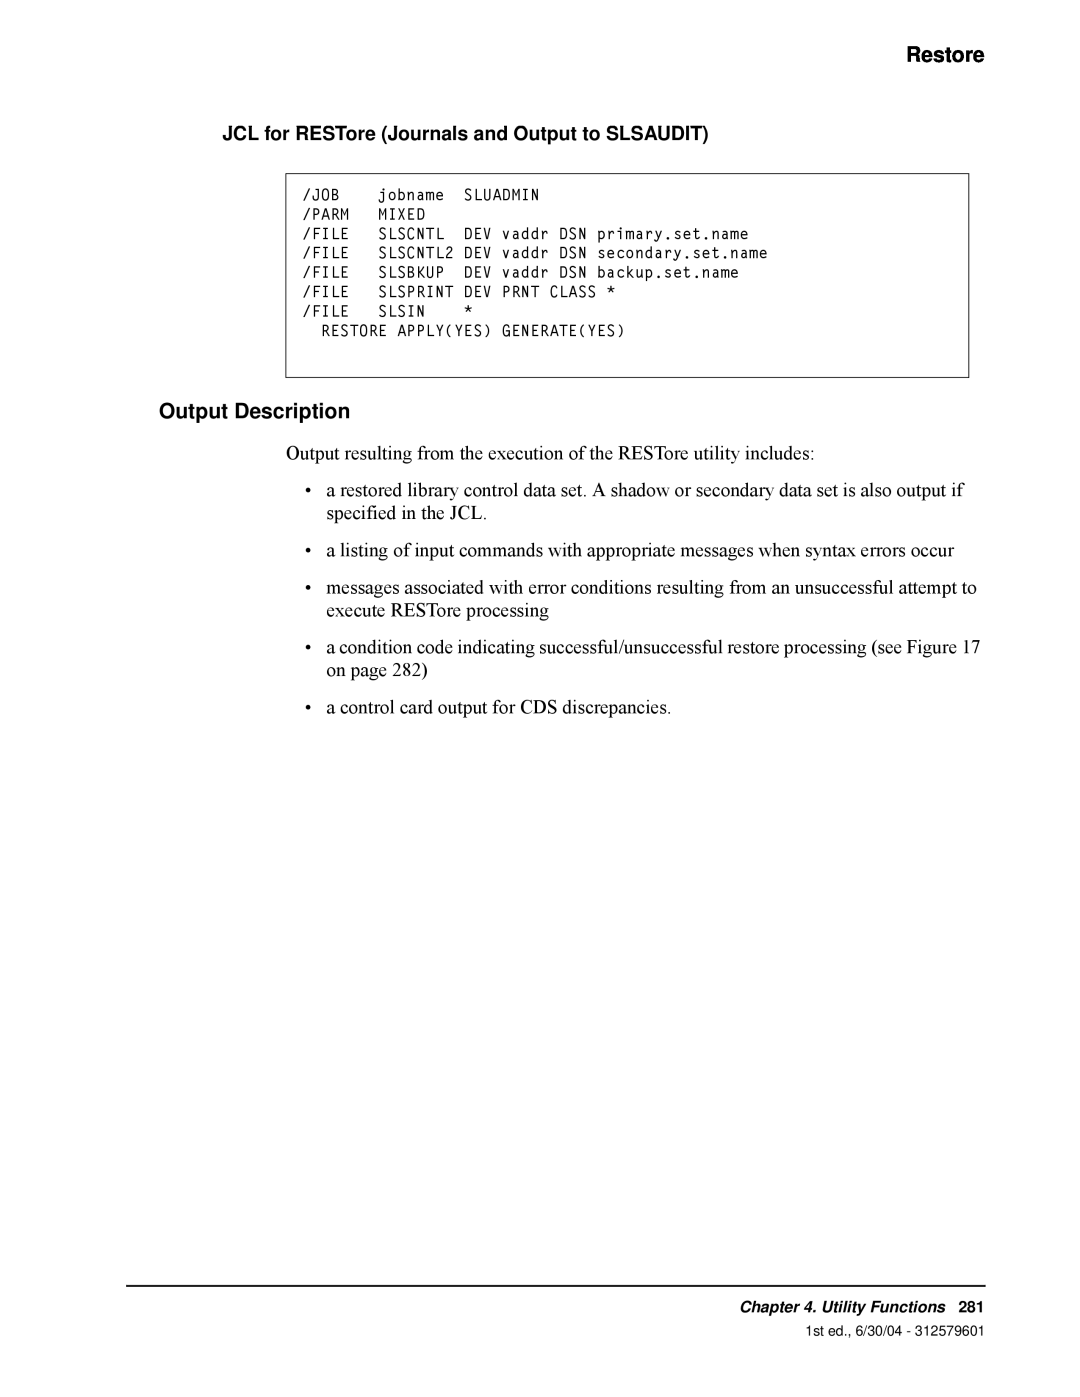 StorageTek 6 manual JCL for RESTore Journals and Output to SLSAUDIT, Restore, Output Description 